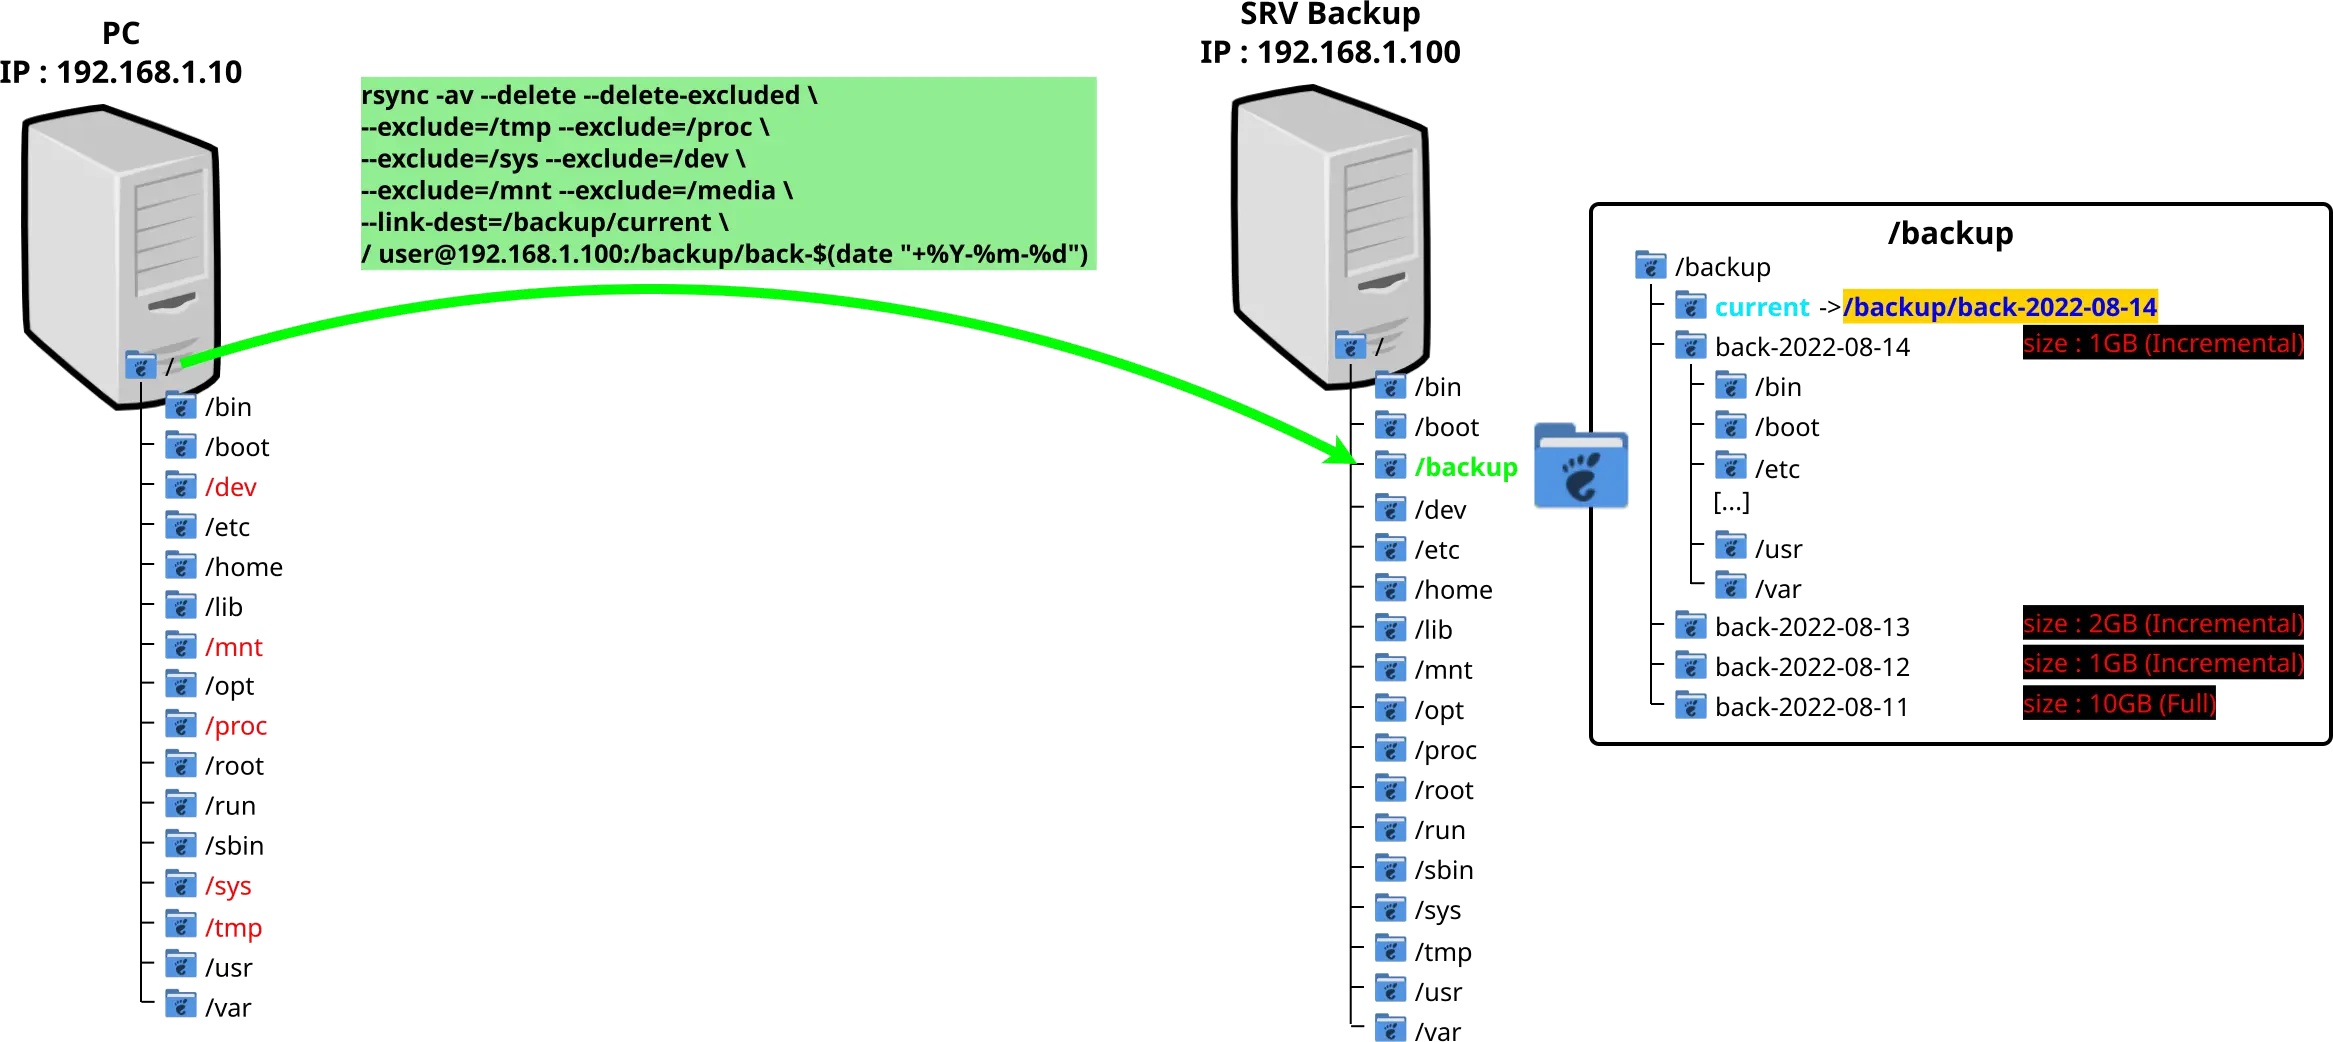 une représentation graphique de la structure des dossiers Linux avec la sauvegarde incrémentale rsync vers serveur de sauvegarde Linux